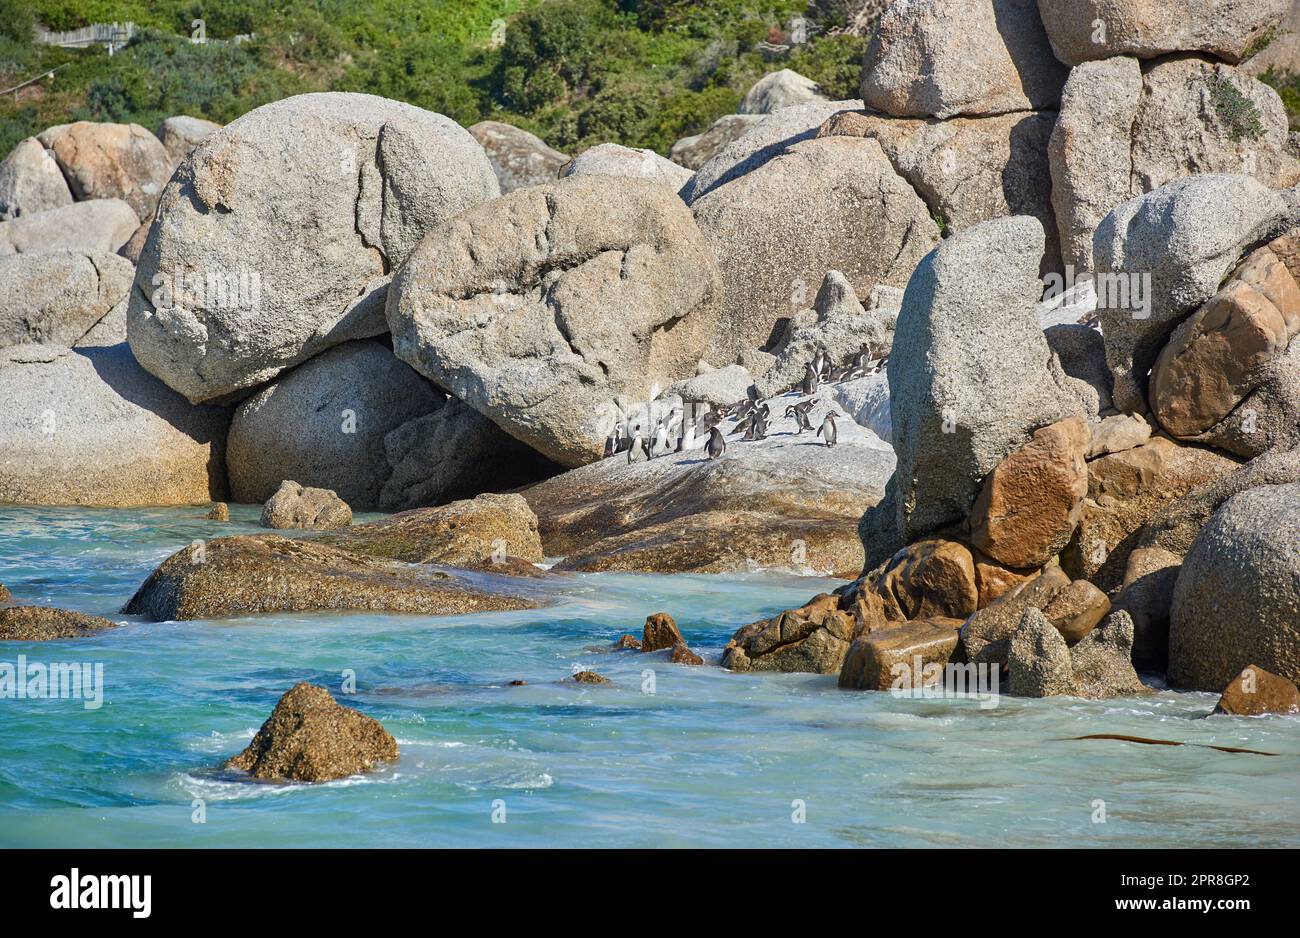 Pinguine am Boulders Beach in Südafrika. Vögel genießen und spielen auf den Felsen an einem leeren Strand am Meer. Tiere an einem abgelegenen und abgeschiedenen beliebten Touristenziel in Kapstadt Stockfoto